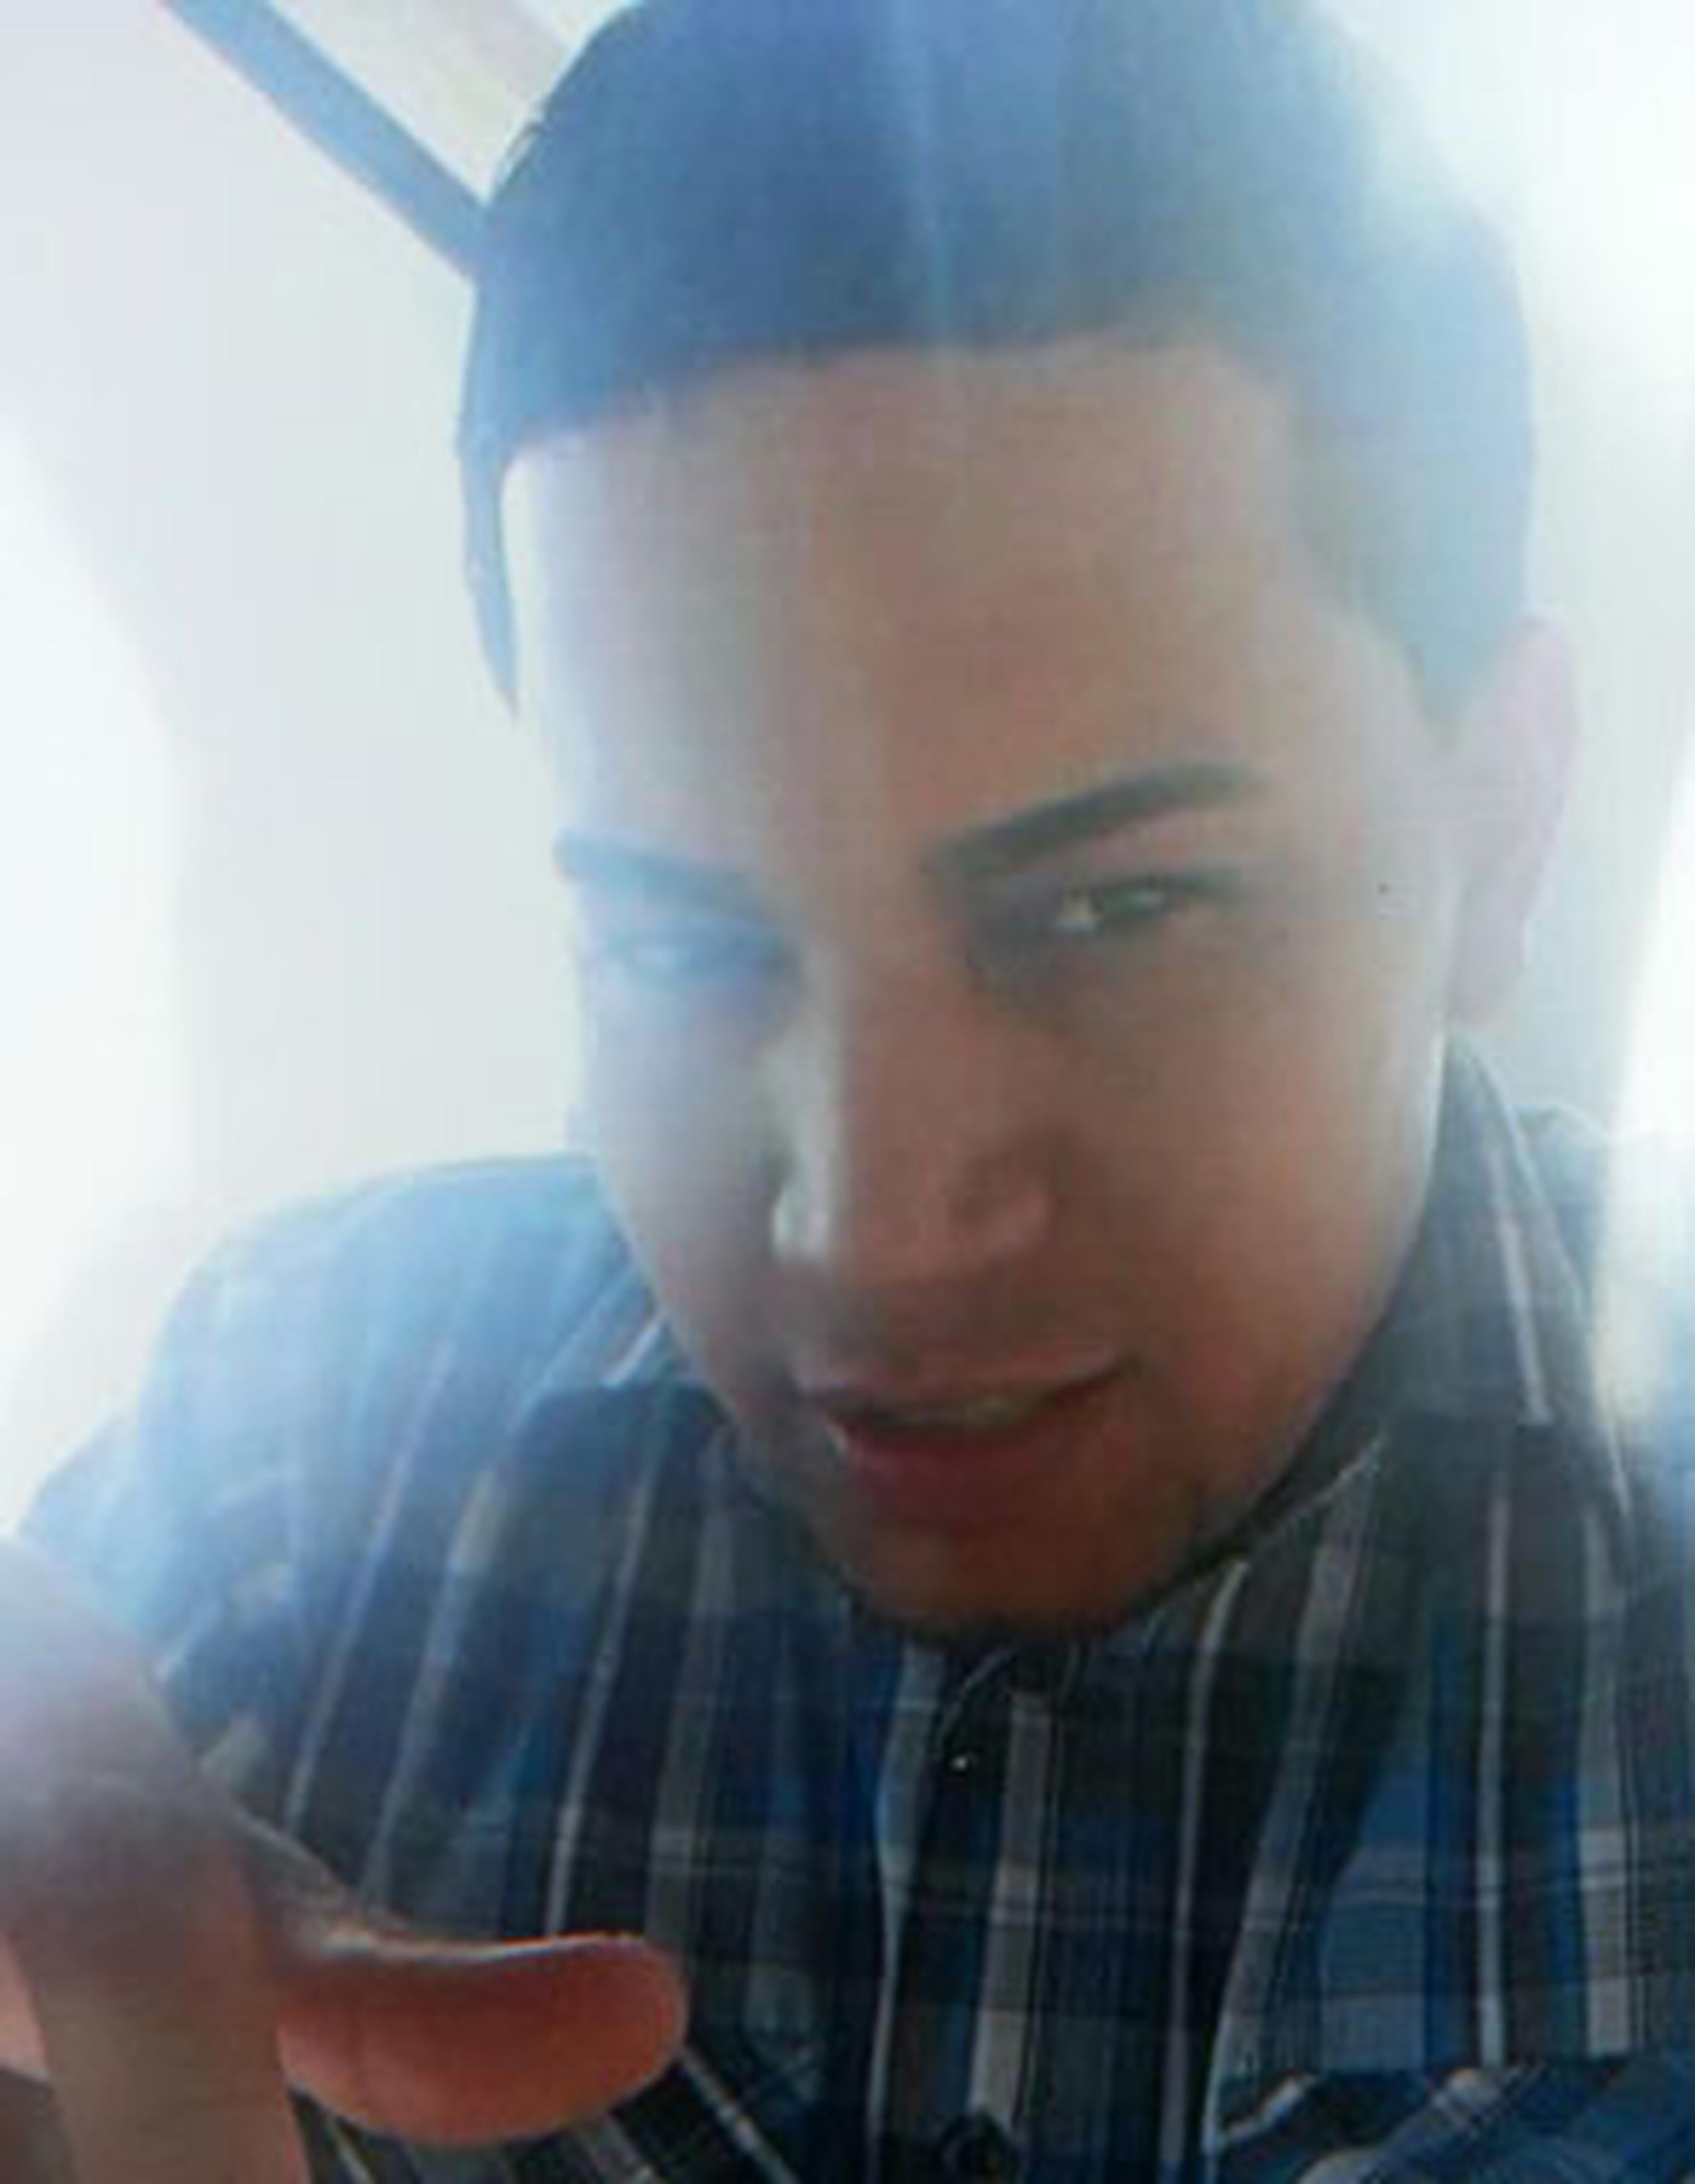 Jason David Feliciano Vélez, de 26 años, fue visto por última vez en los predios de una gasolinera localizada en la carretera PR-371 en Yauco. (Suministrada)